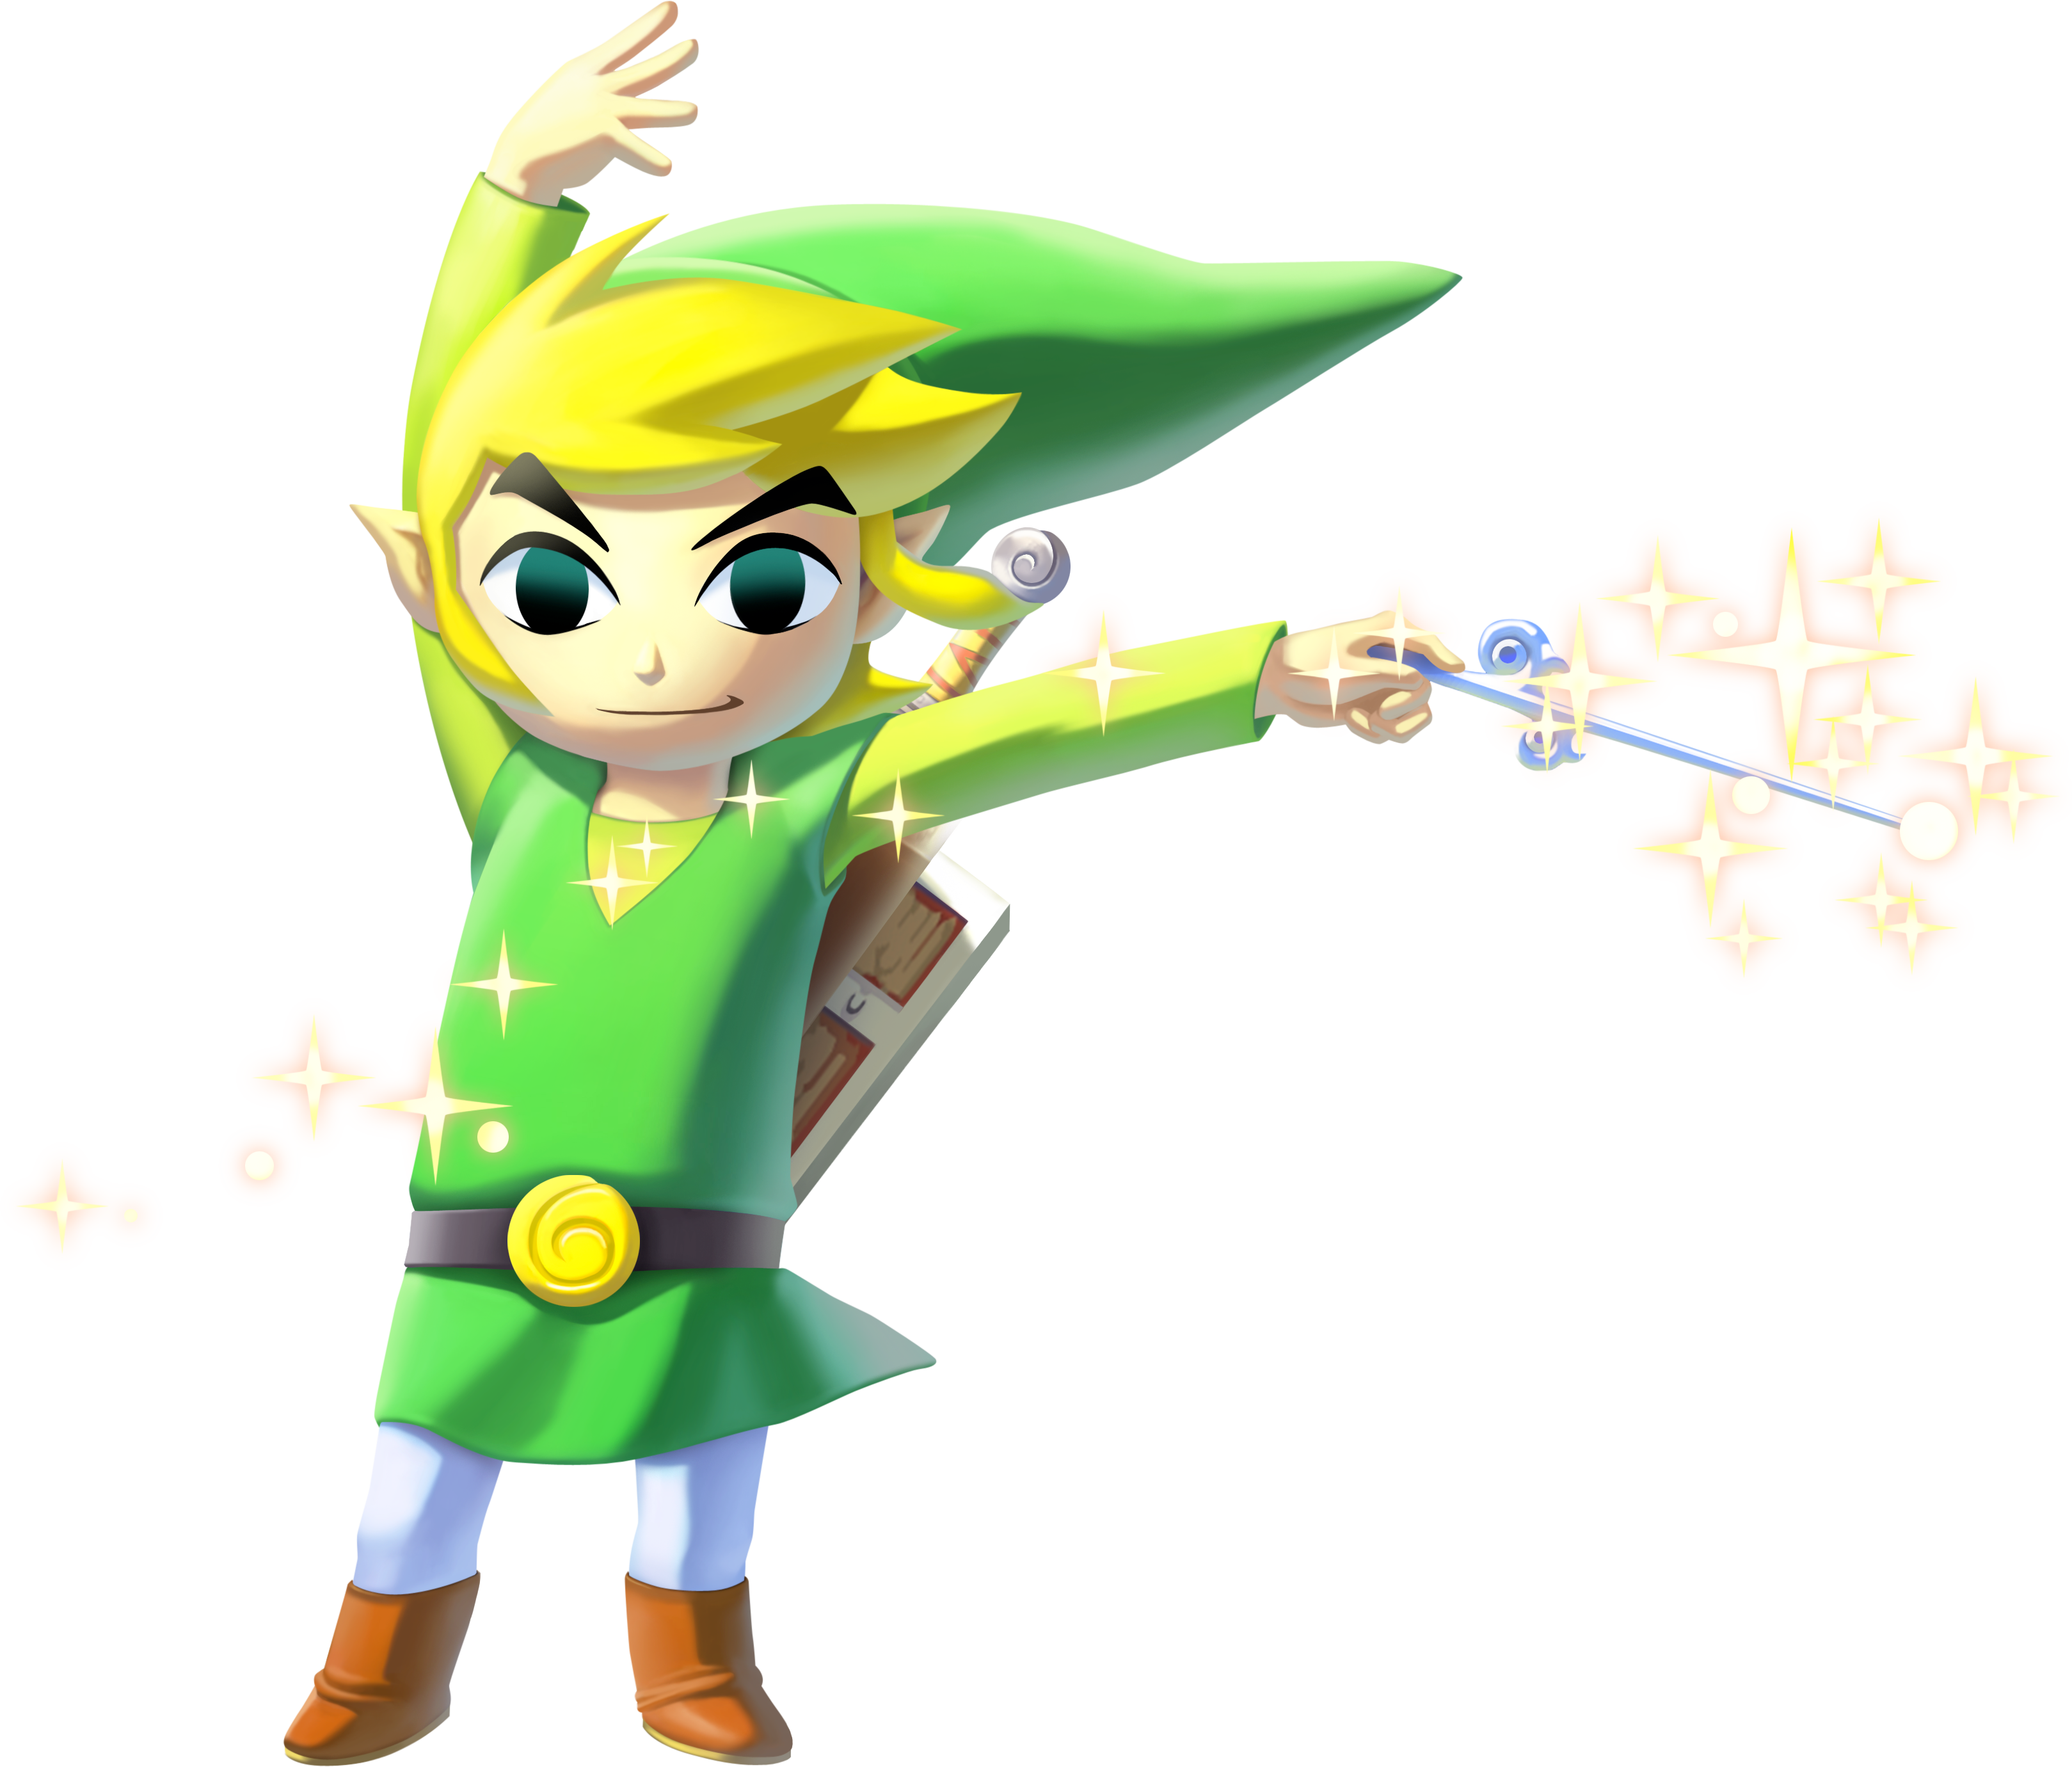 Link's Official Tphd Render - Nintendo Amiibo Legend Of Zelda Series: Toon Link (3238x2761)